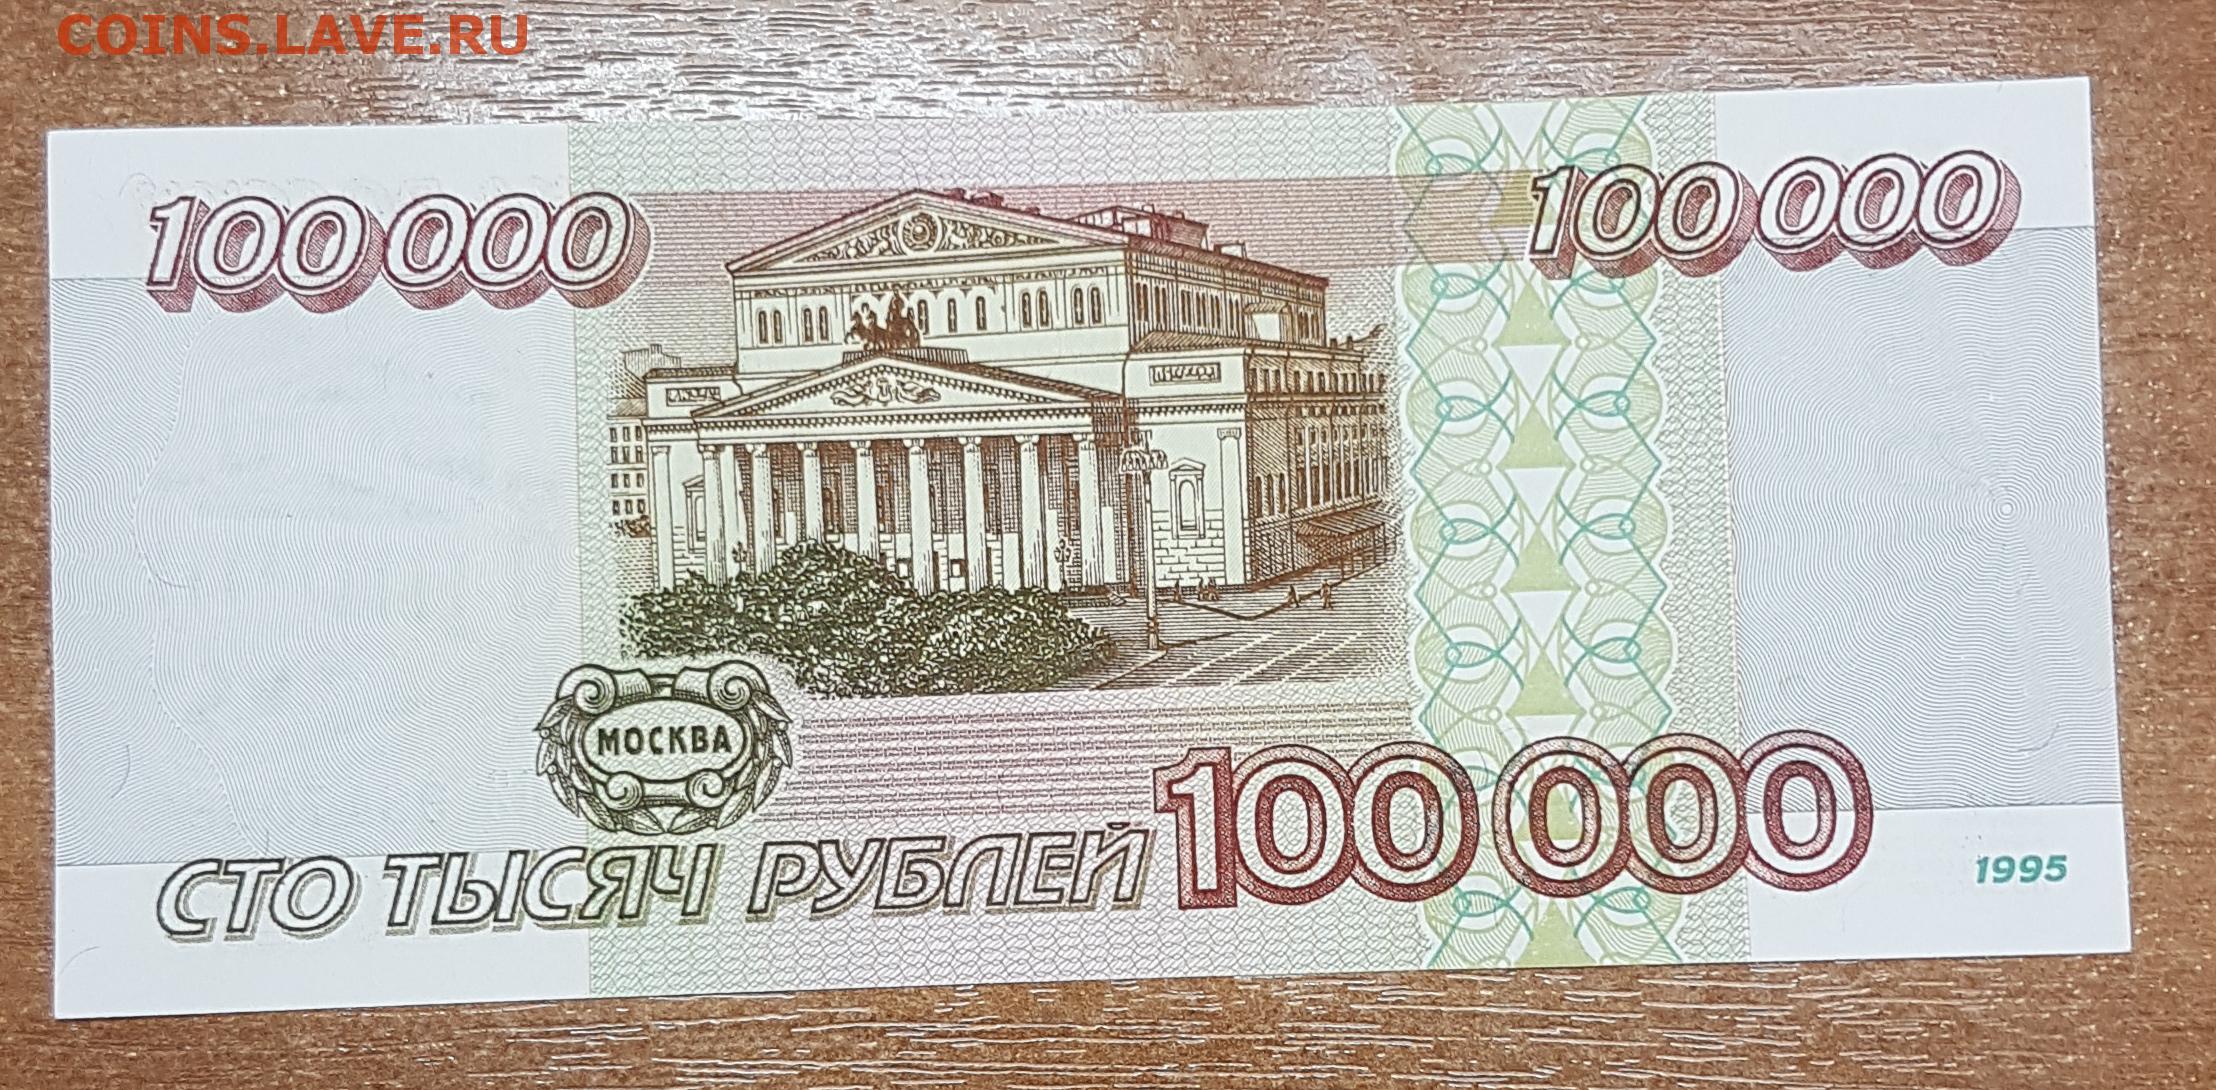 Р 100.000. 100 000 Рублей. 100 000 Рублей купюра. Картинка 100 000 рублей. Купюра 100 рублей.